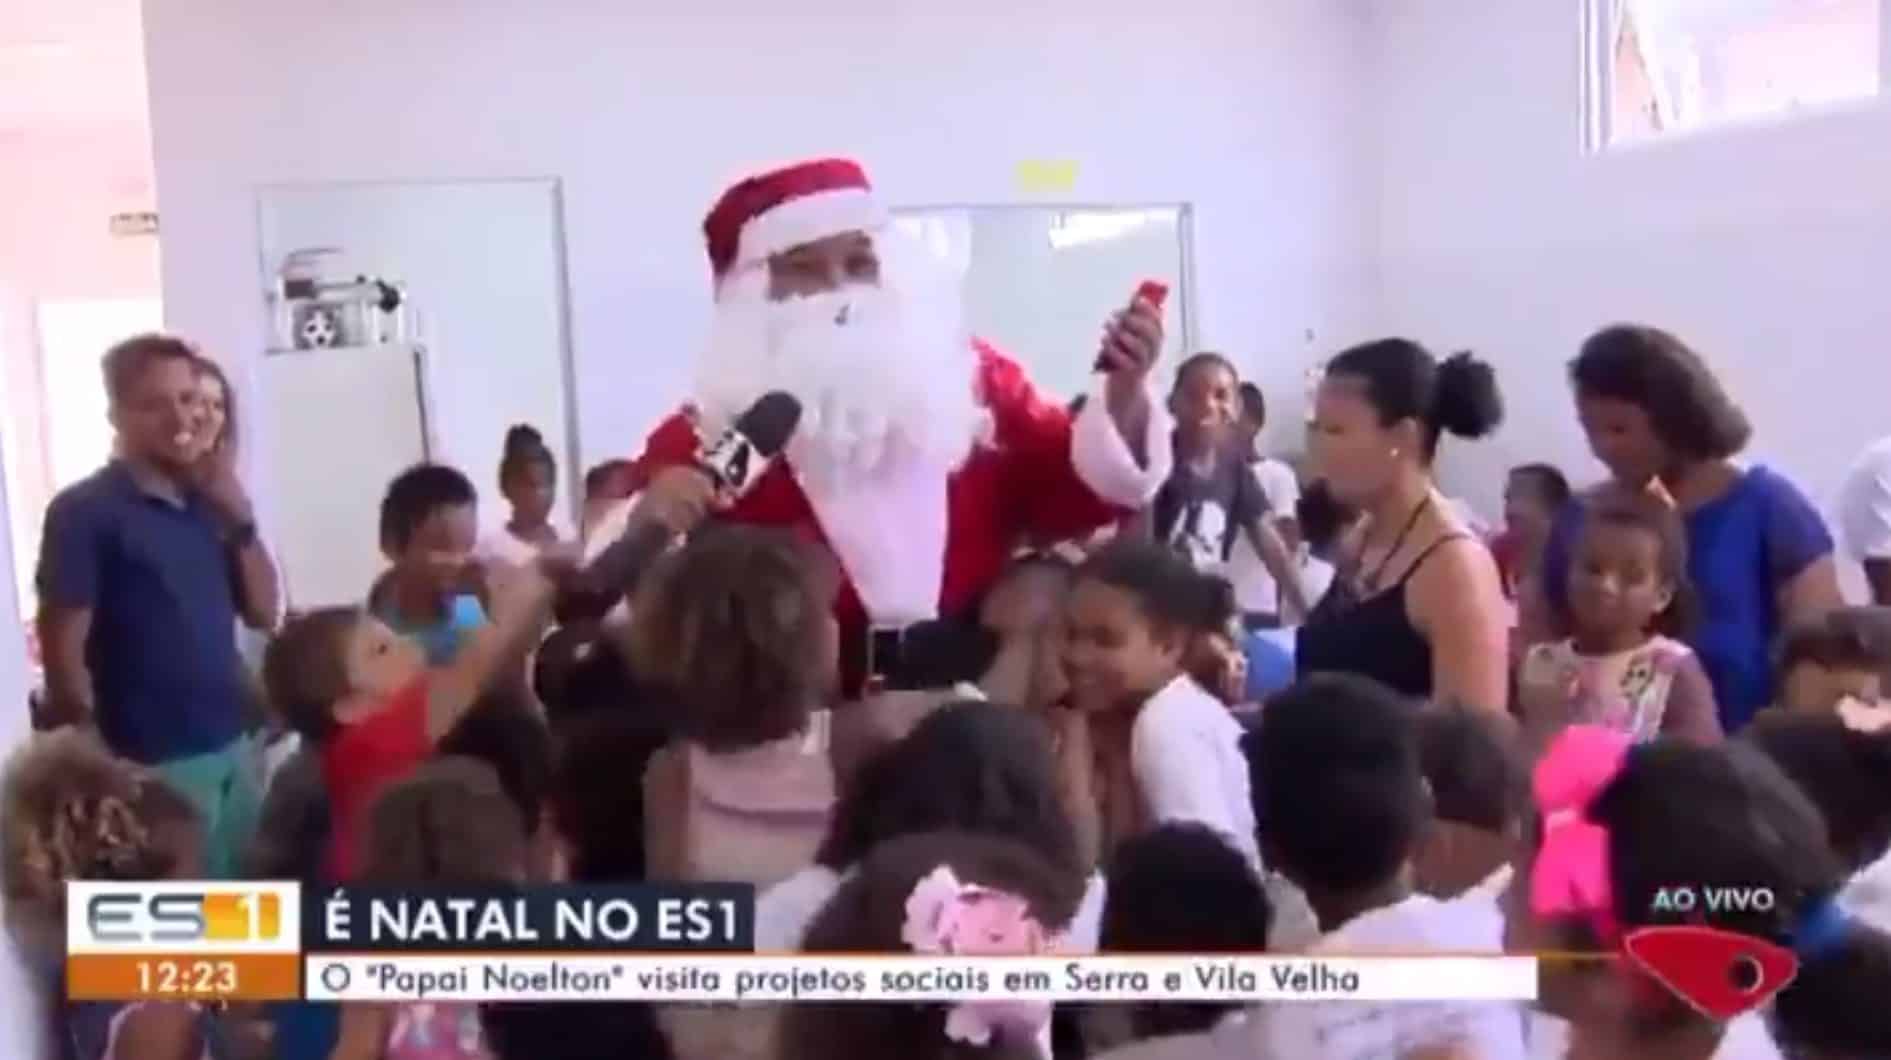 Repórter da Globo surge de Papai Noel e leva tombo ao vivo; assista